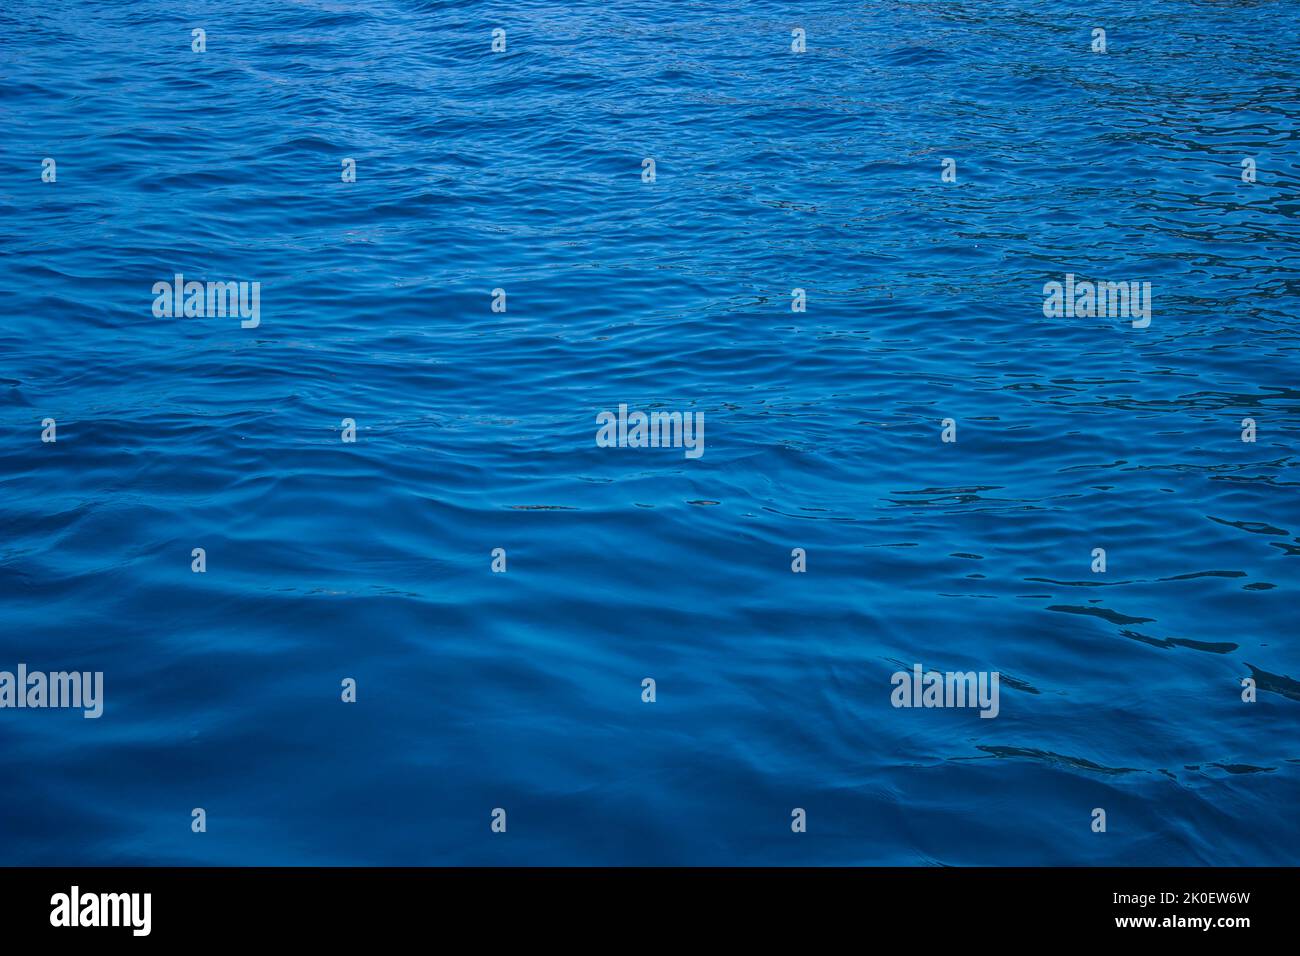 Primer plano de las aguas azules profundas del mar como telón de fondo Foto de stock